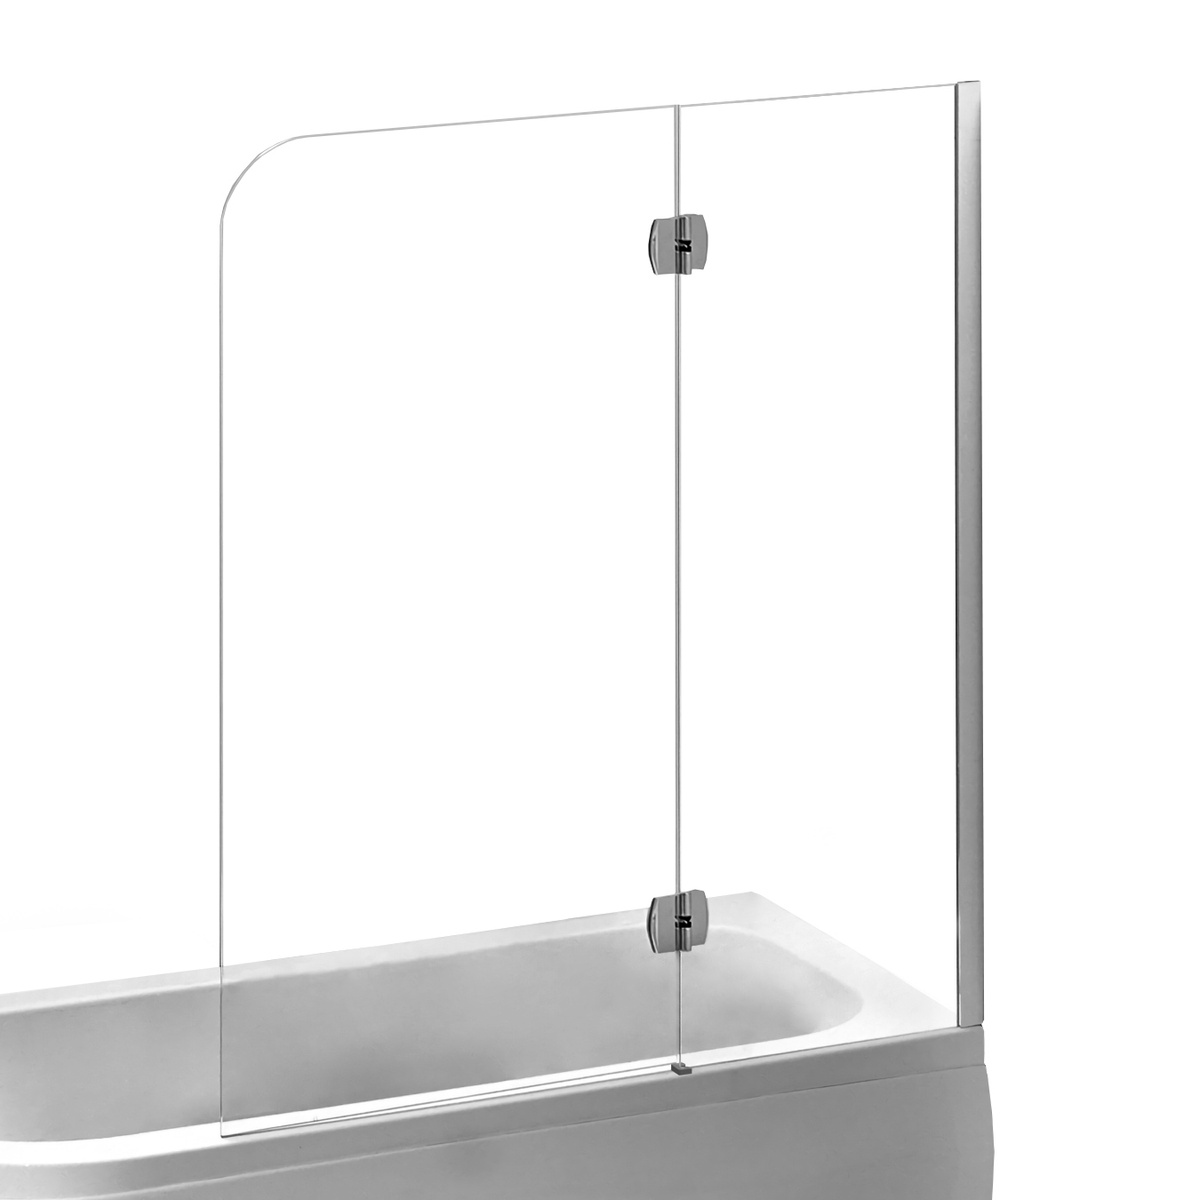 Шторка стеклянная для ванны правая двухсекционная распашная 150см x 120см EGER стекло прозрачное 6мм профиль хром 599-120CH/R